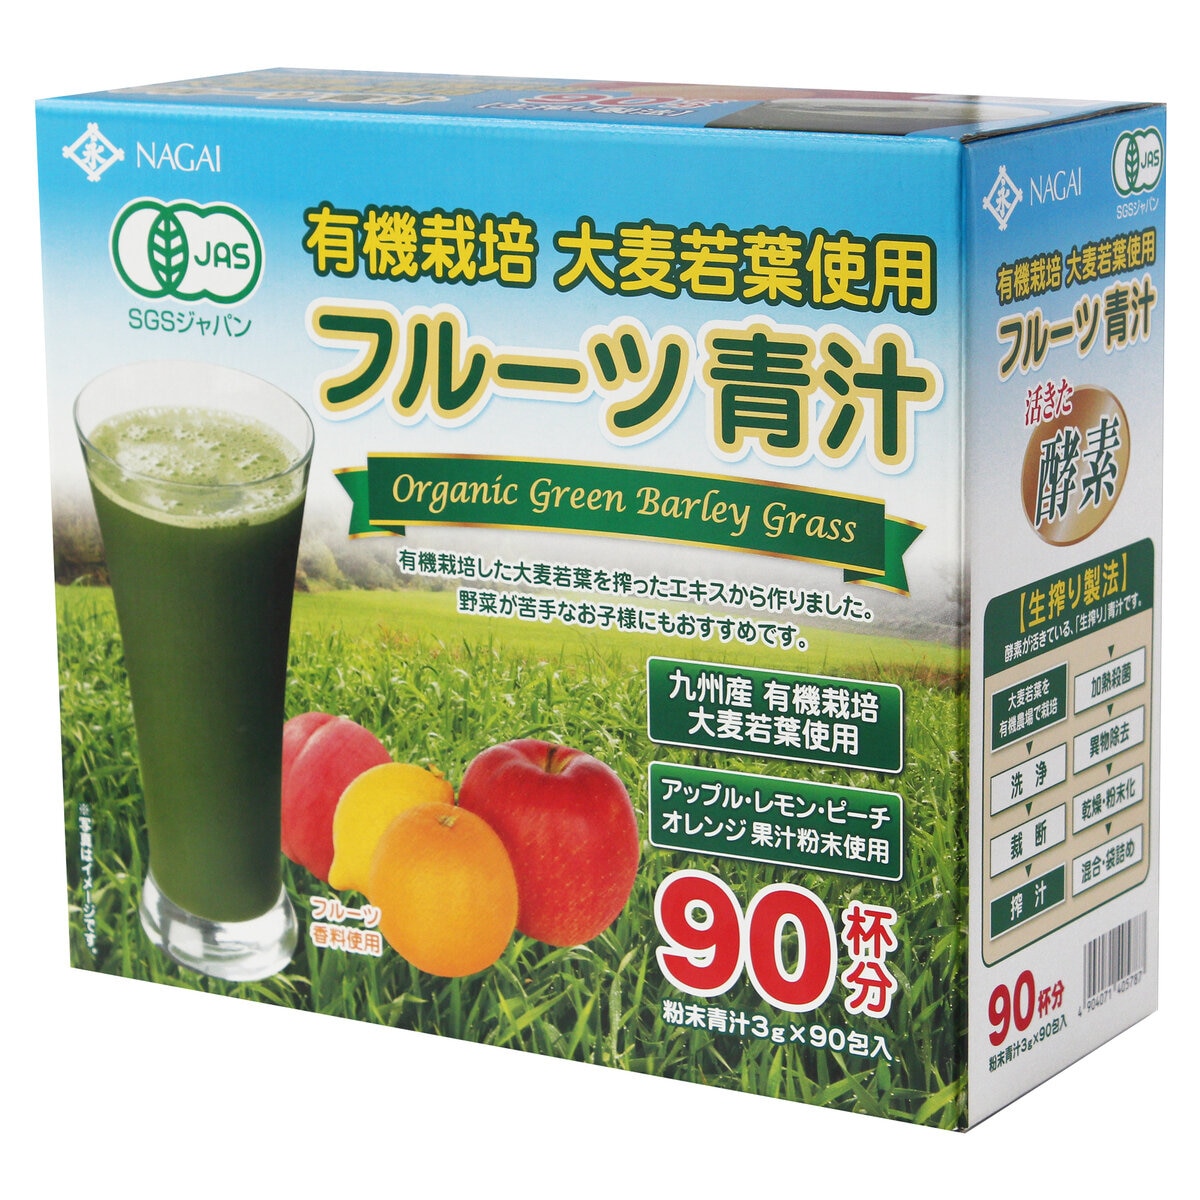 フルーツ青汁 有機栽培大麦 3g スティック x 90 包 | Costco Japan